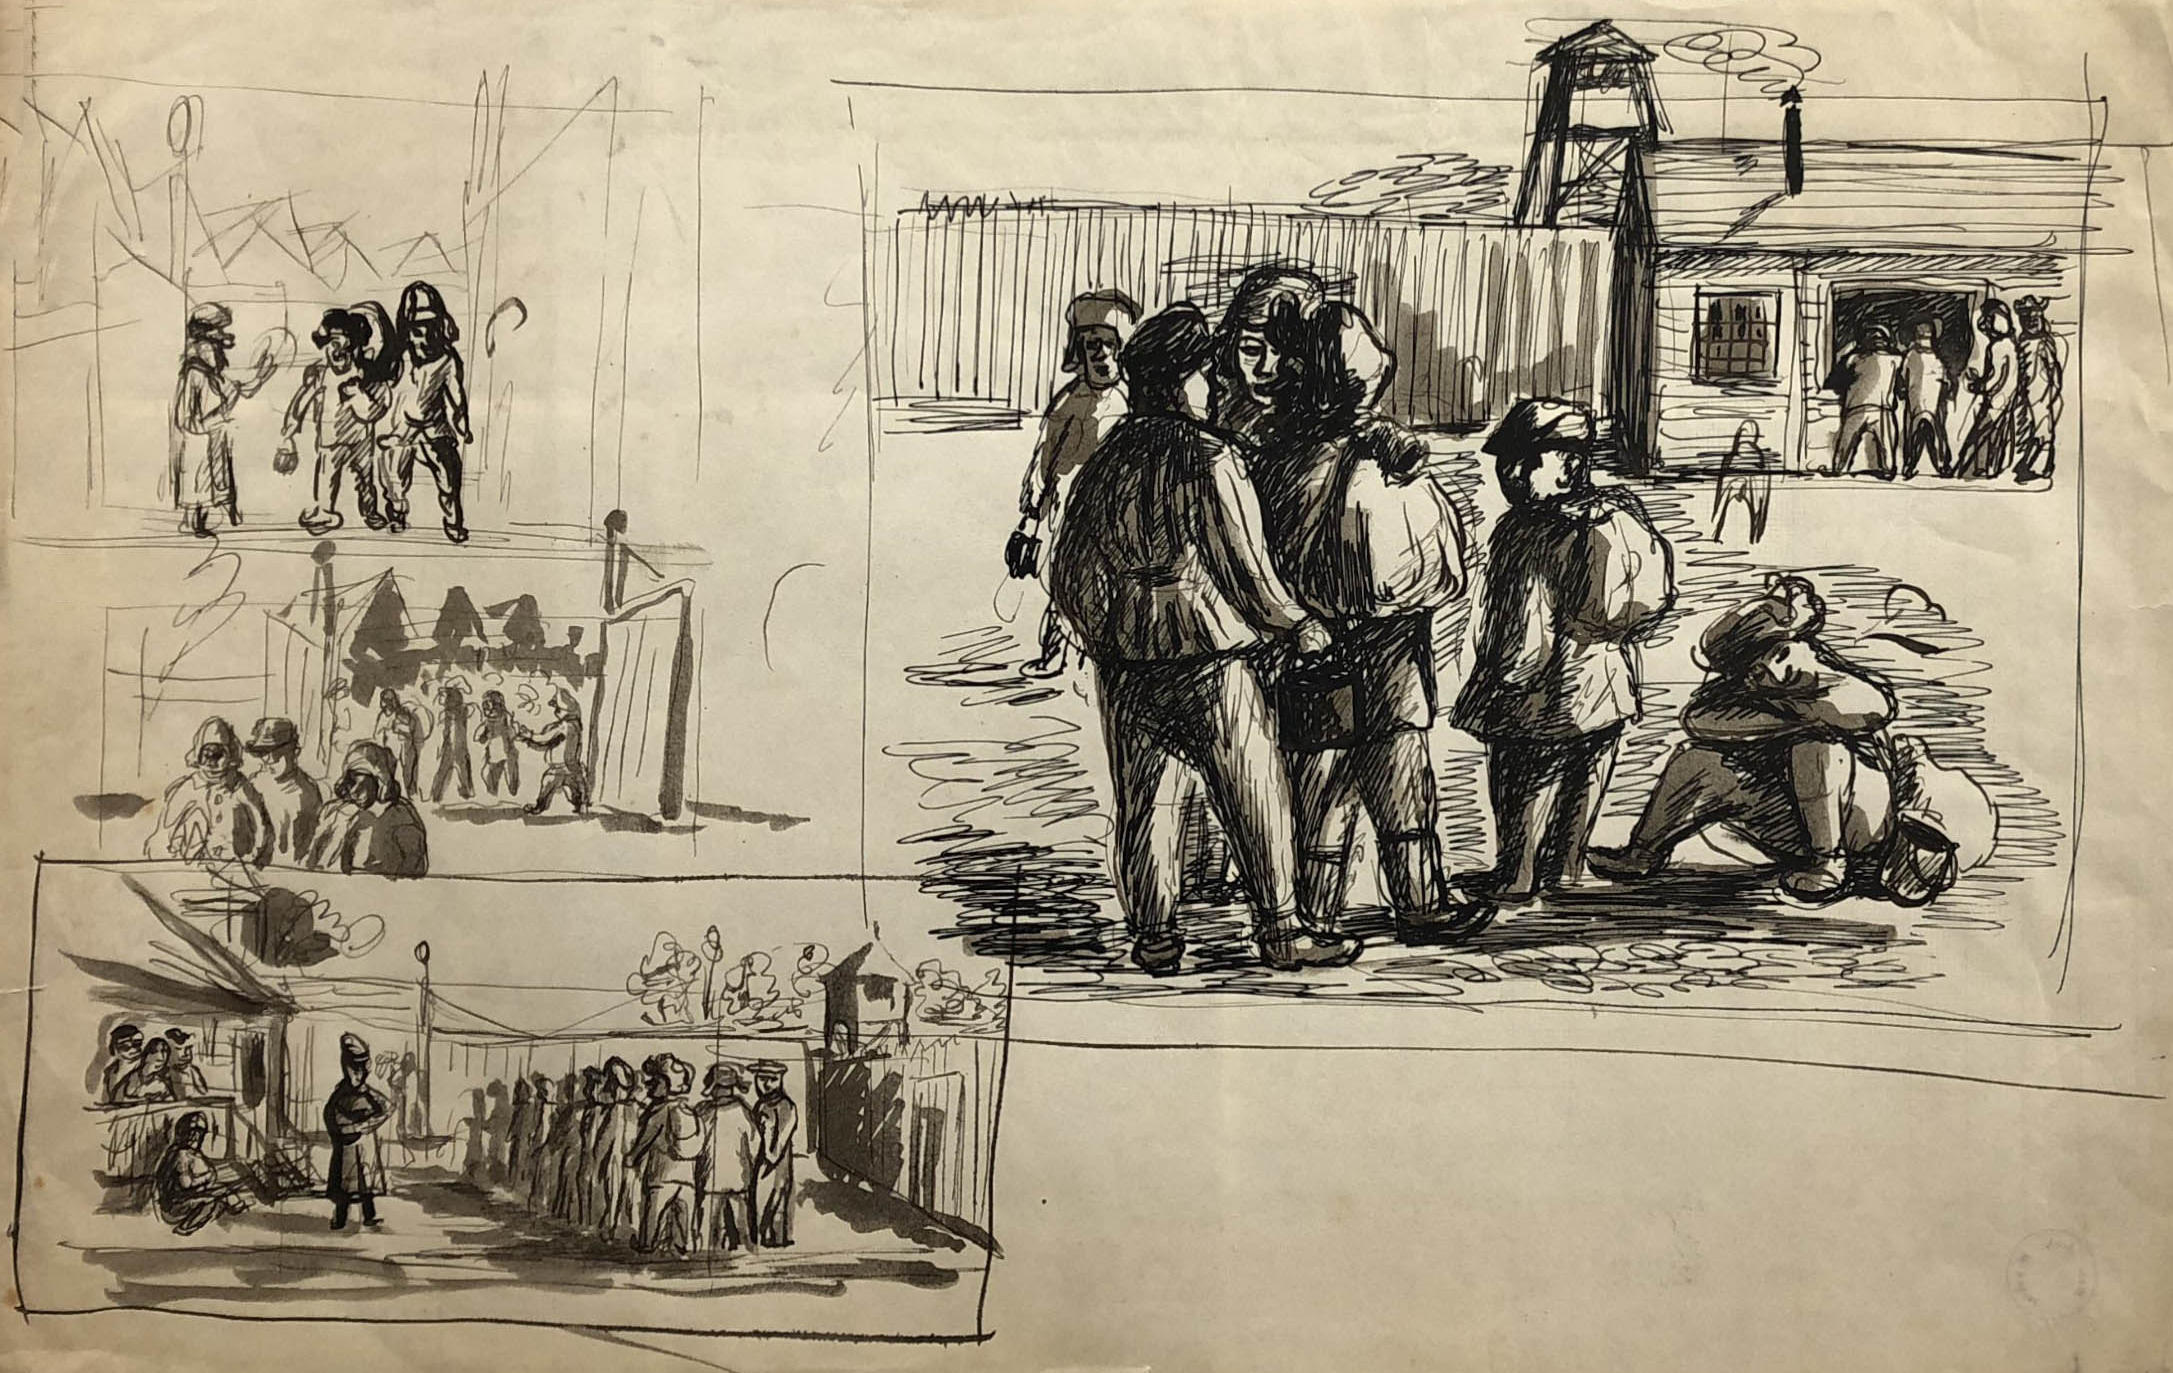 Rysunki przedstawiające codzienność w łagrze. Adam Kossowski, rys. piórkiem, praca stworzona w Londynie w 1943 roku.